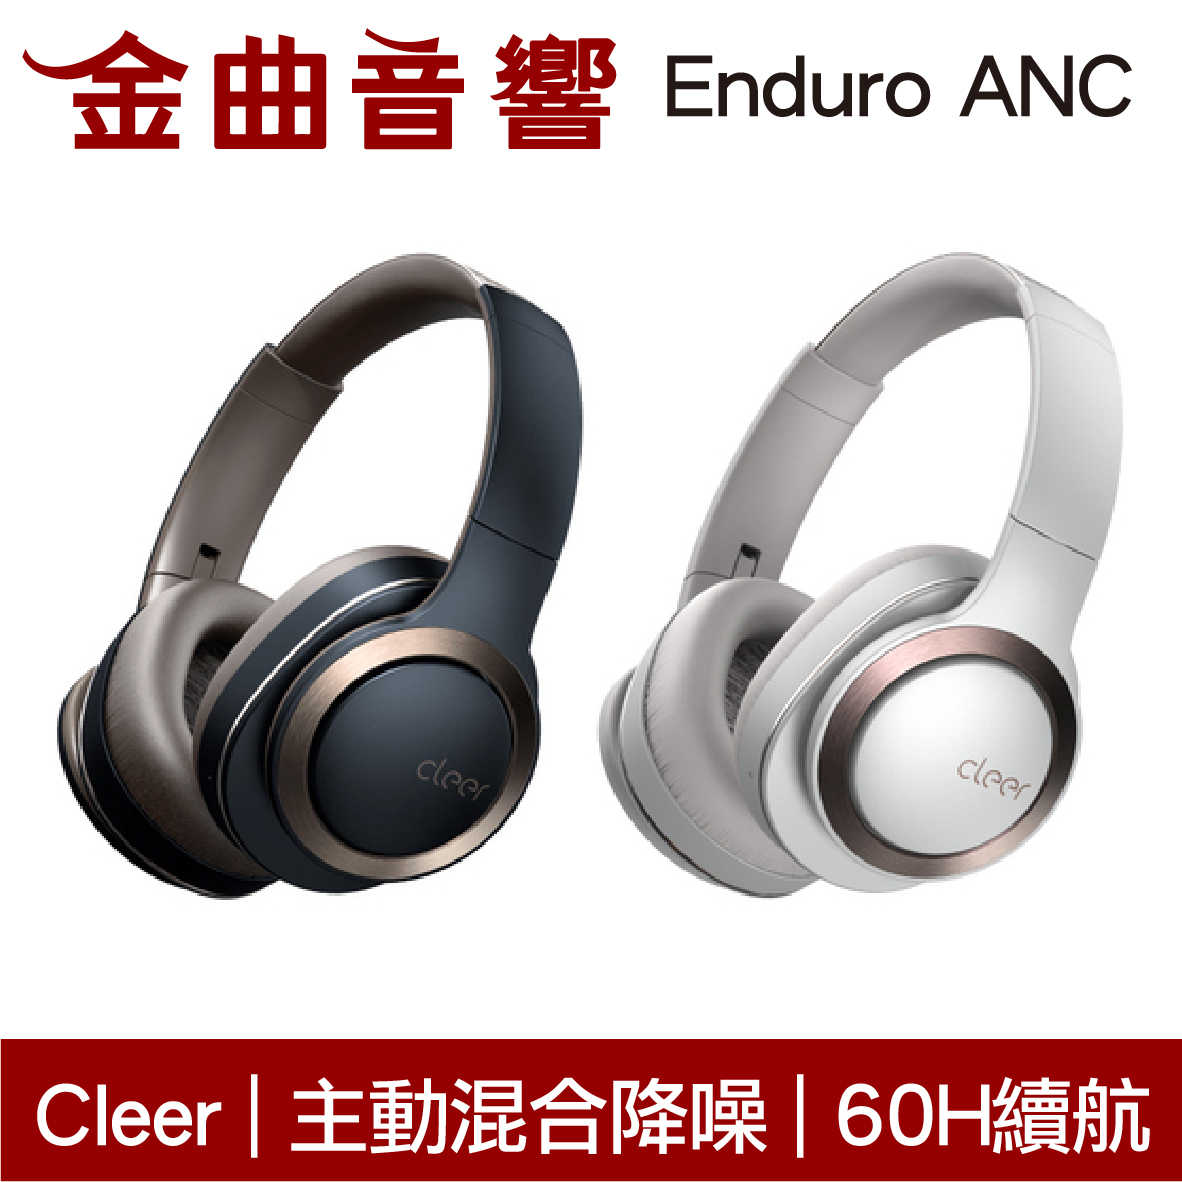 Cleer Enduro ANC 智能降噪 雙麥通話 Hi-Res 通透模式 藍牙 耳罩式 耳機 | 金曲音響